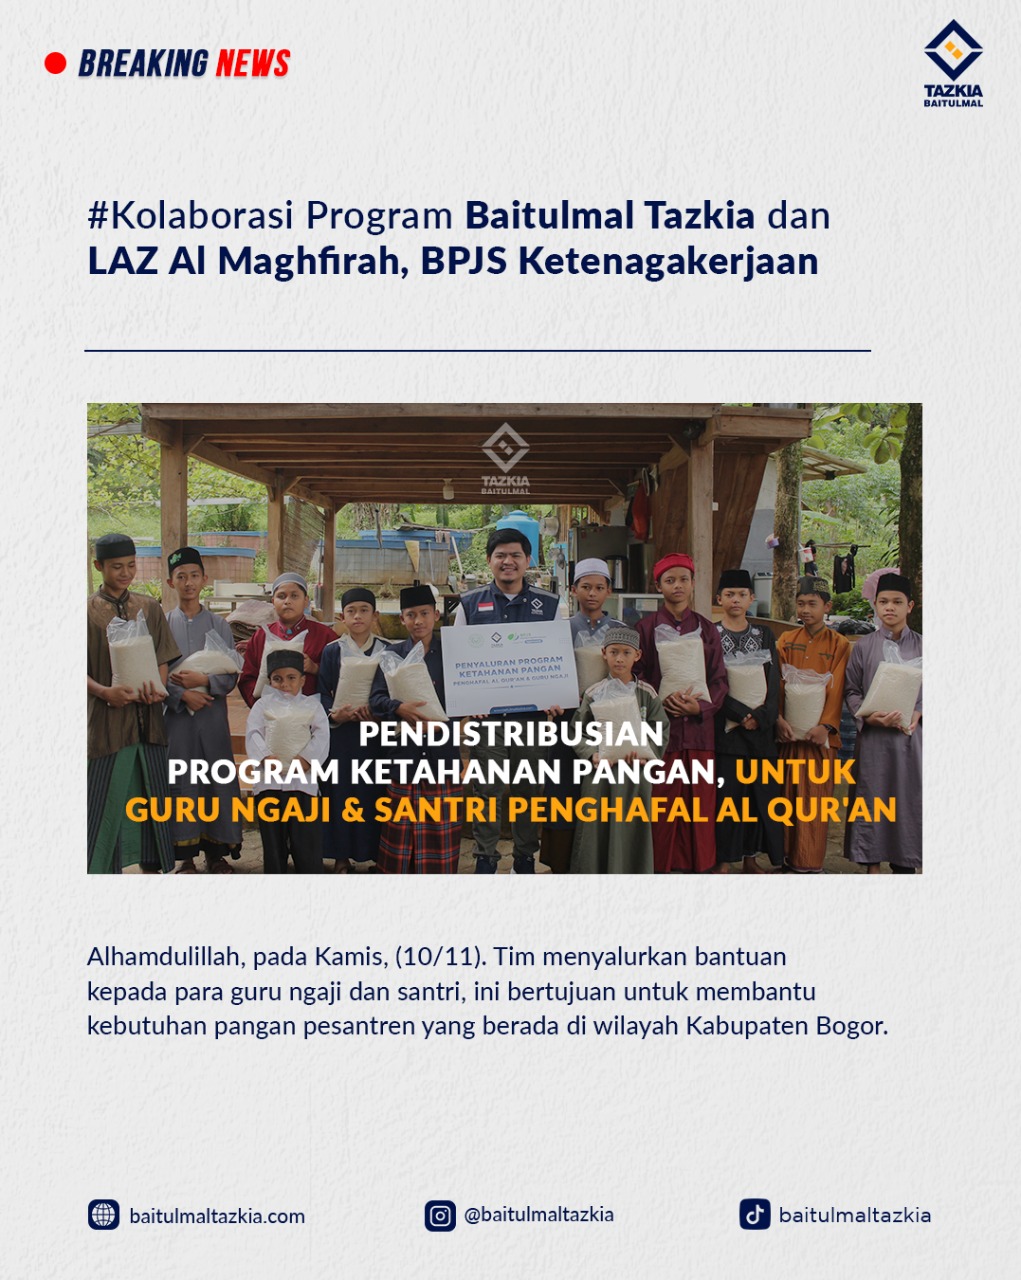 Baitulmal Tazkia dan LAZ Al Maghfirah BPJS Ketenagakerjaan distribusikan Program ketahanan pangan, untuk guru ngaji dan santri penghafal Al Qur’an